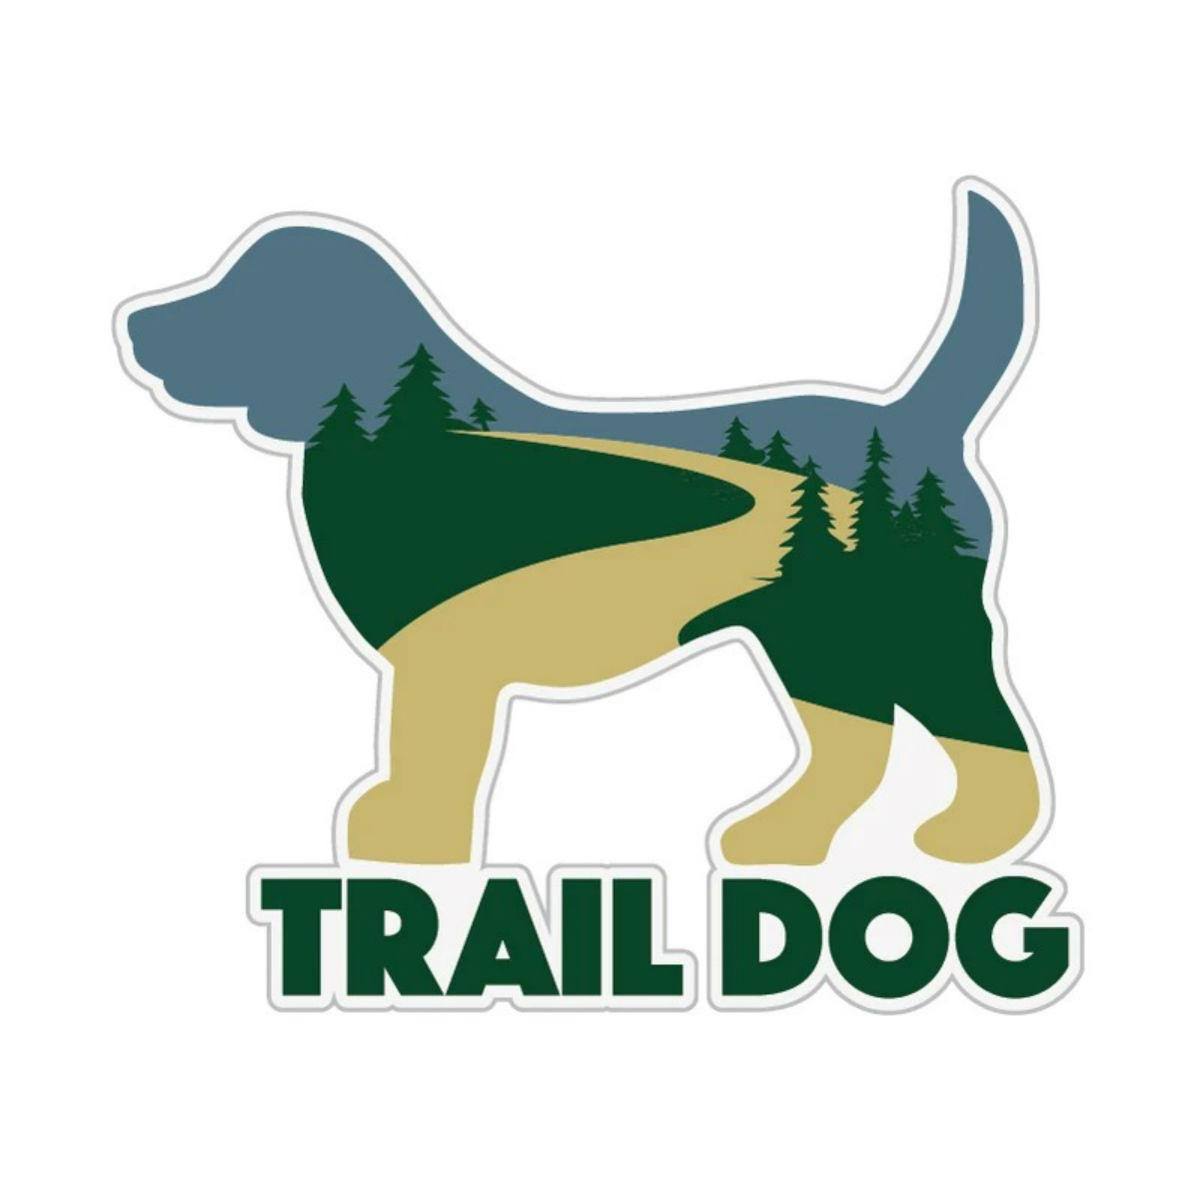 Trail Dog Sticker by Dog Speak - 3" Sticker